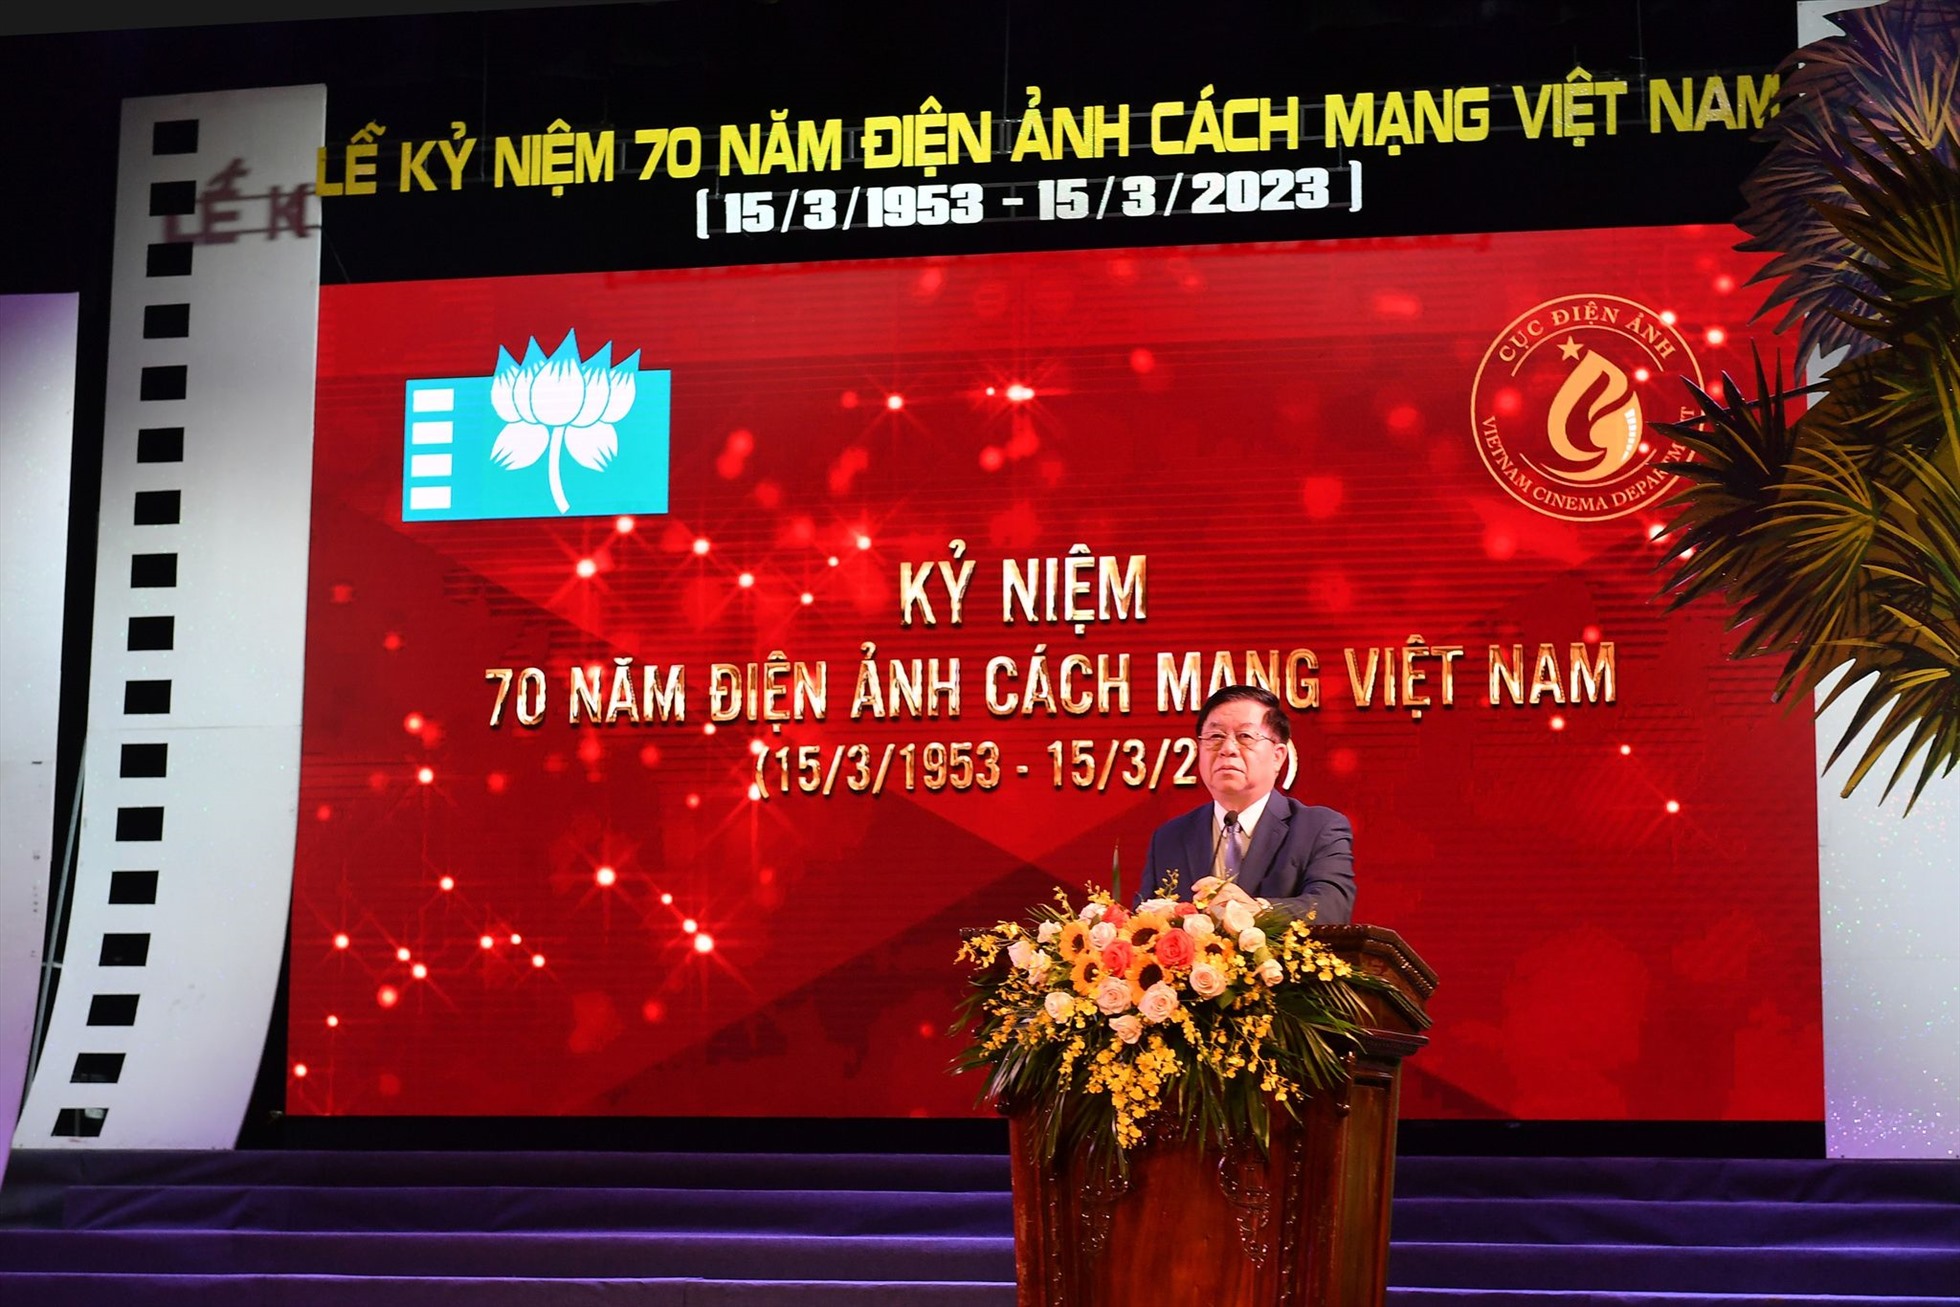 Ông Nguyễn Trọng Nghĩa - Bí thư Trung ương Đảng, Trưởng Ban Tuyên giáo Trung ương - phát biểu tại buổi lễ. Ảnh: Việt Văn